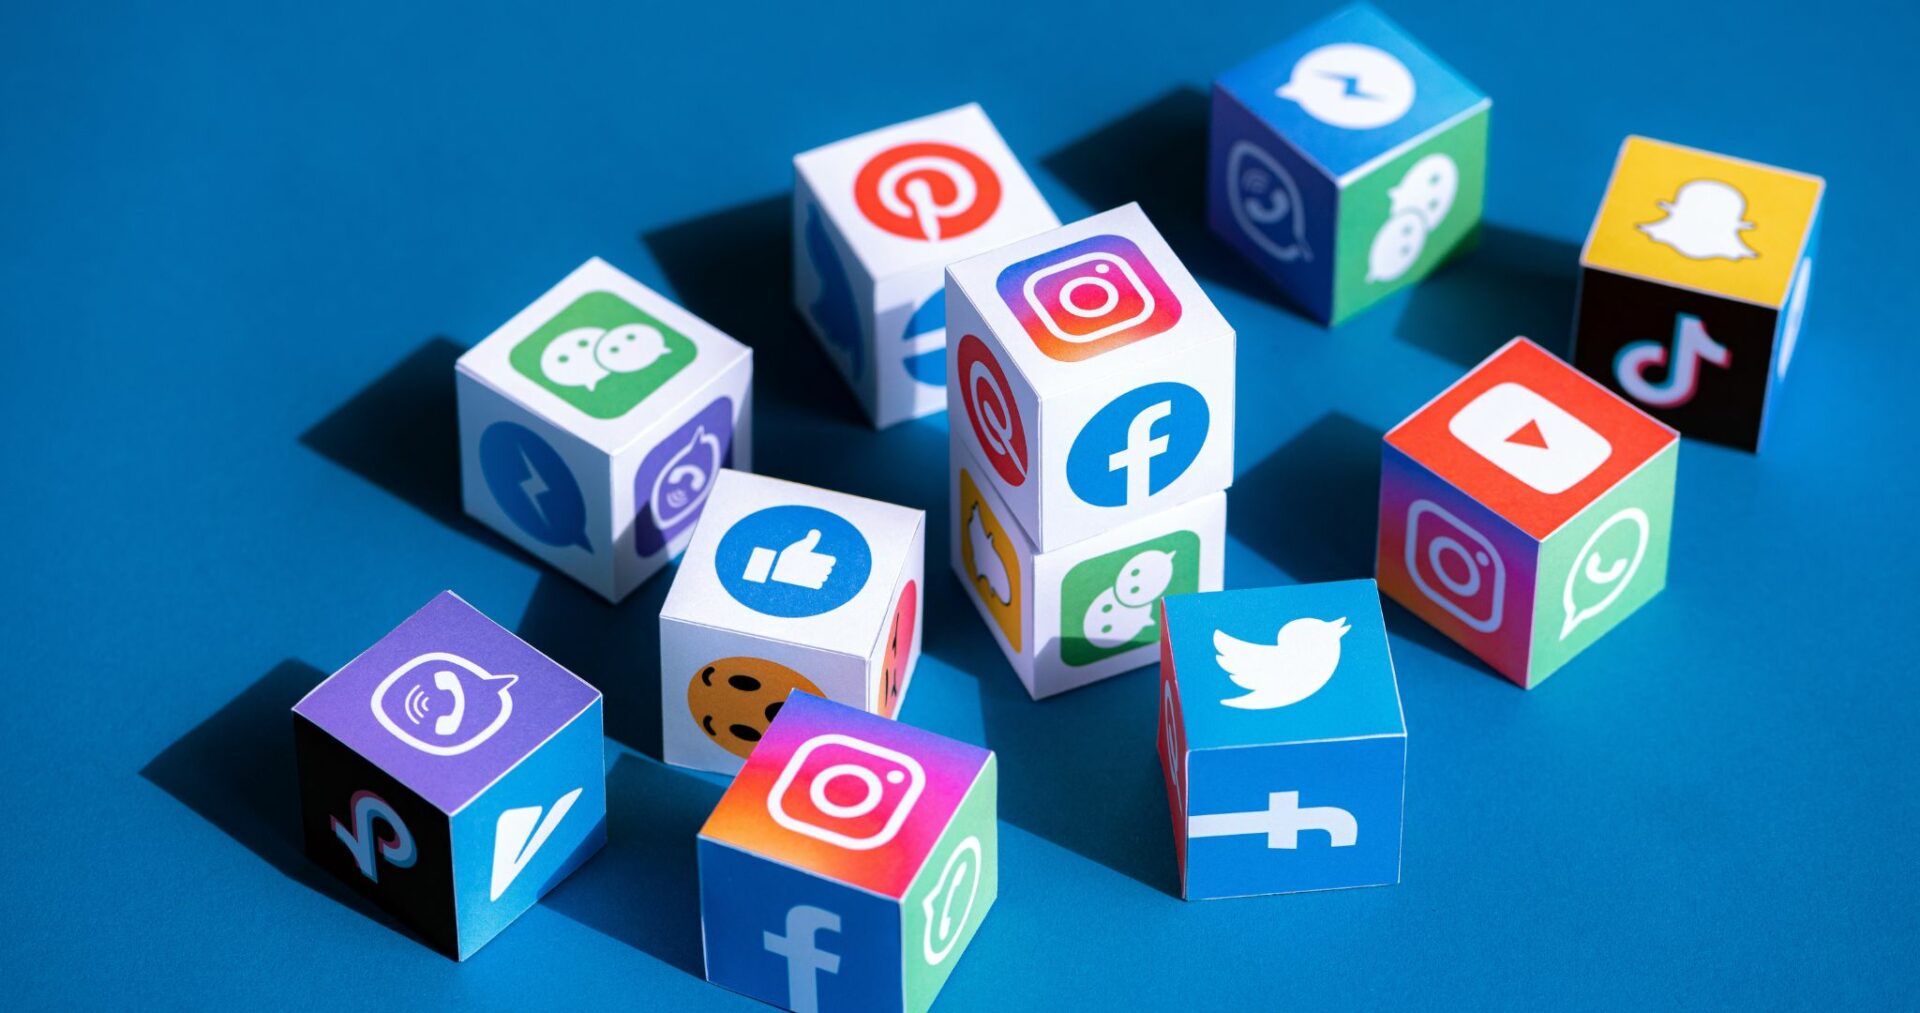 Icons of social media platforms on blocks